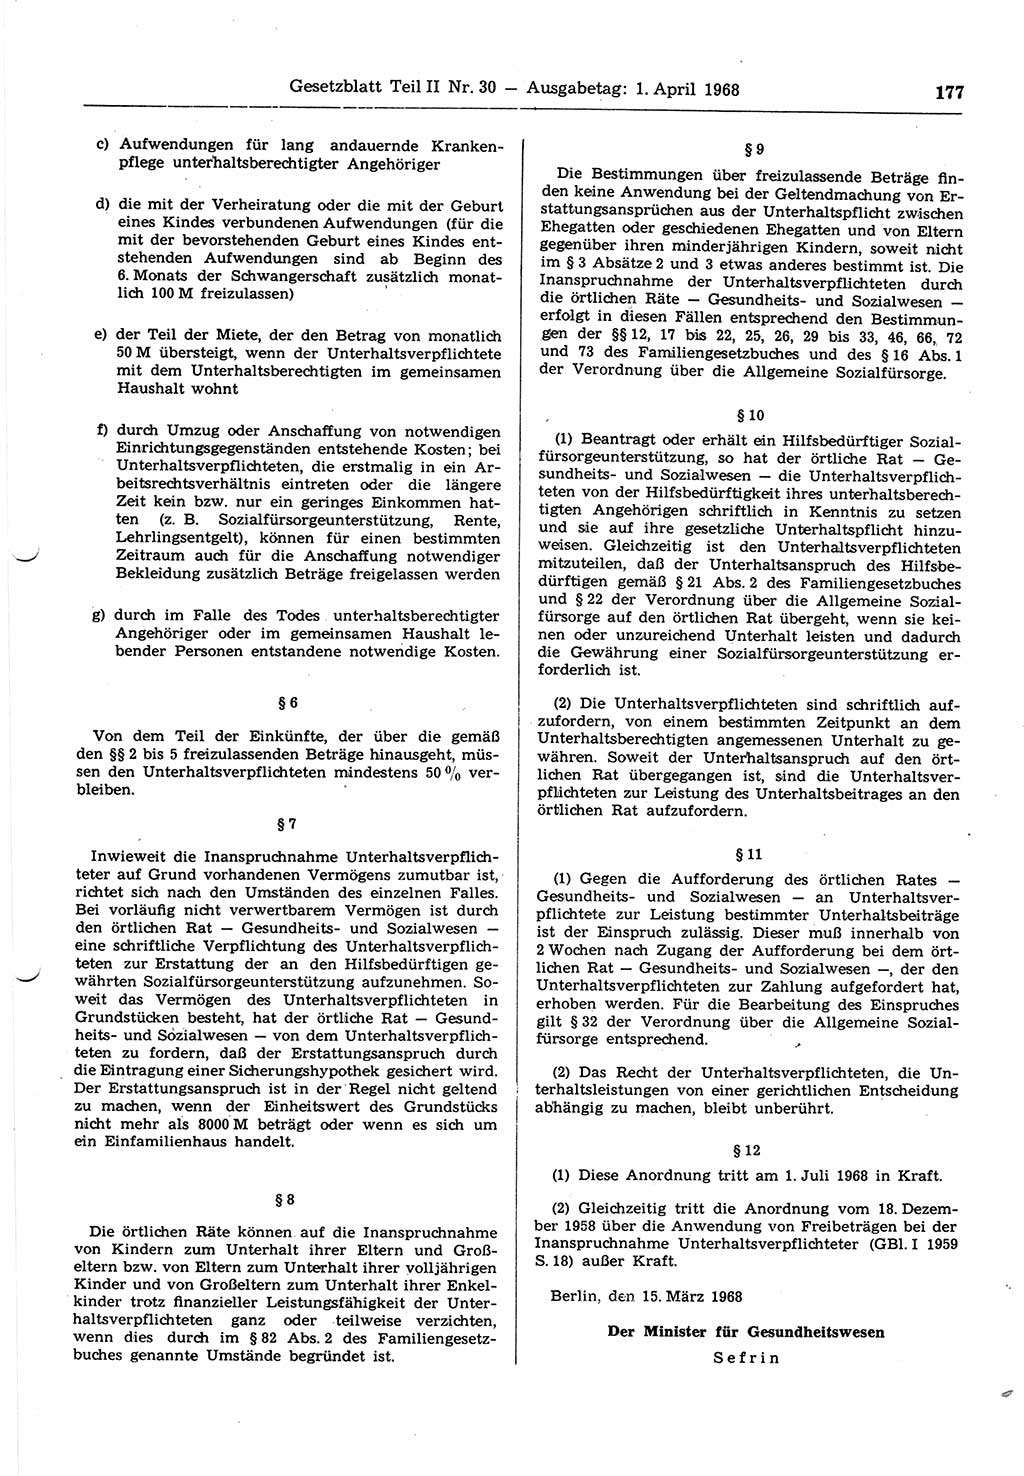 Gesetzblatt (GBl.) der Deutschen Demokratischen Republik (DDR) Teil ⅠⅠ 1968, Seite 177 (GBl. DDR ⅠⅠ 1968, S. 177)